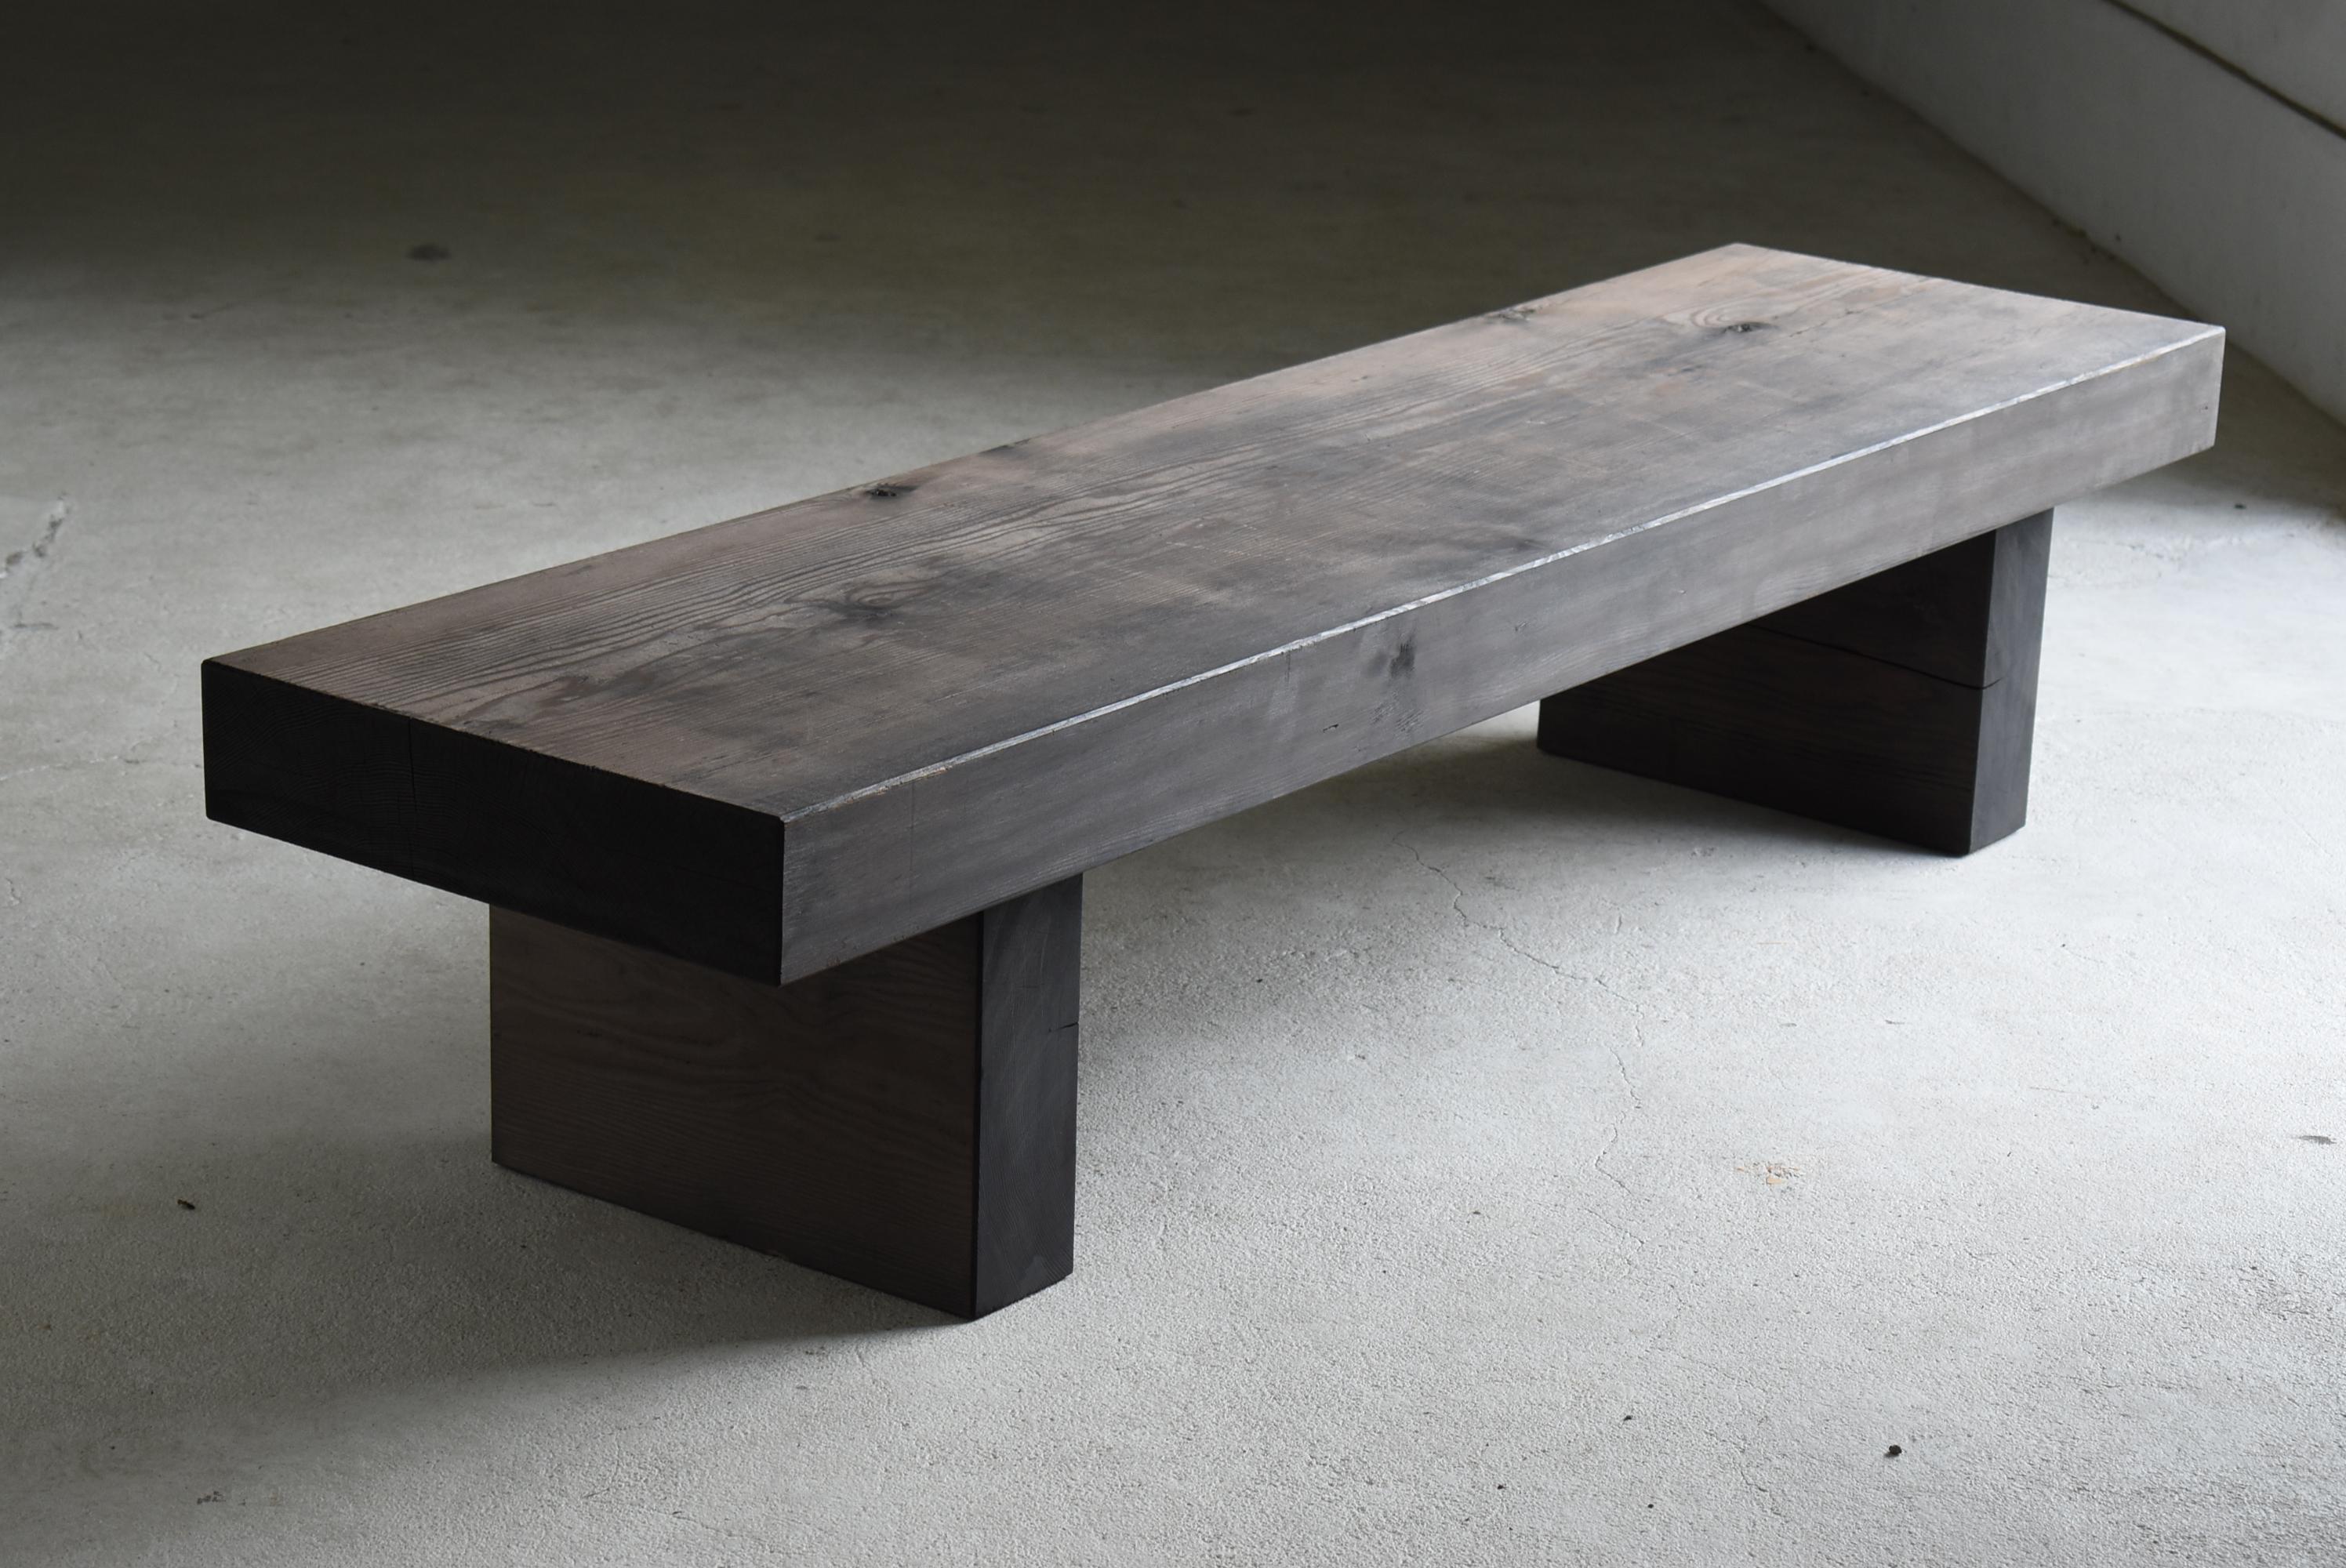 Mid-20th Century Japanese Old Huge Low Table 1940s-1960s / Sofa Table Wabi Sabi Mingei